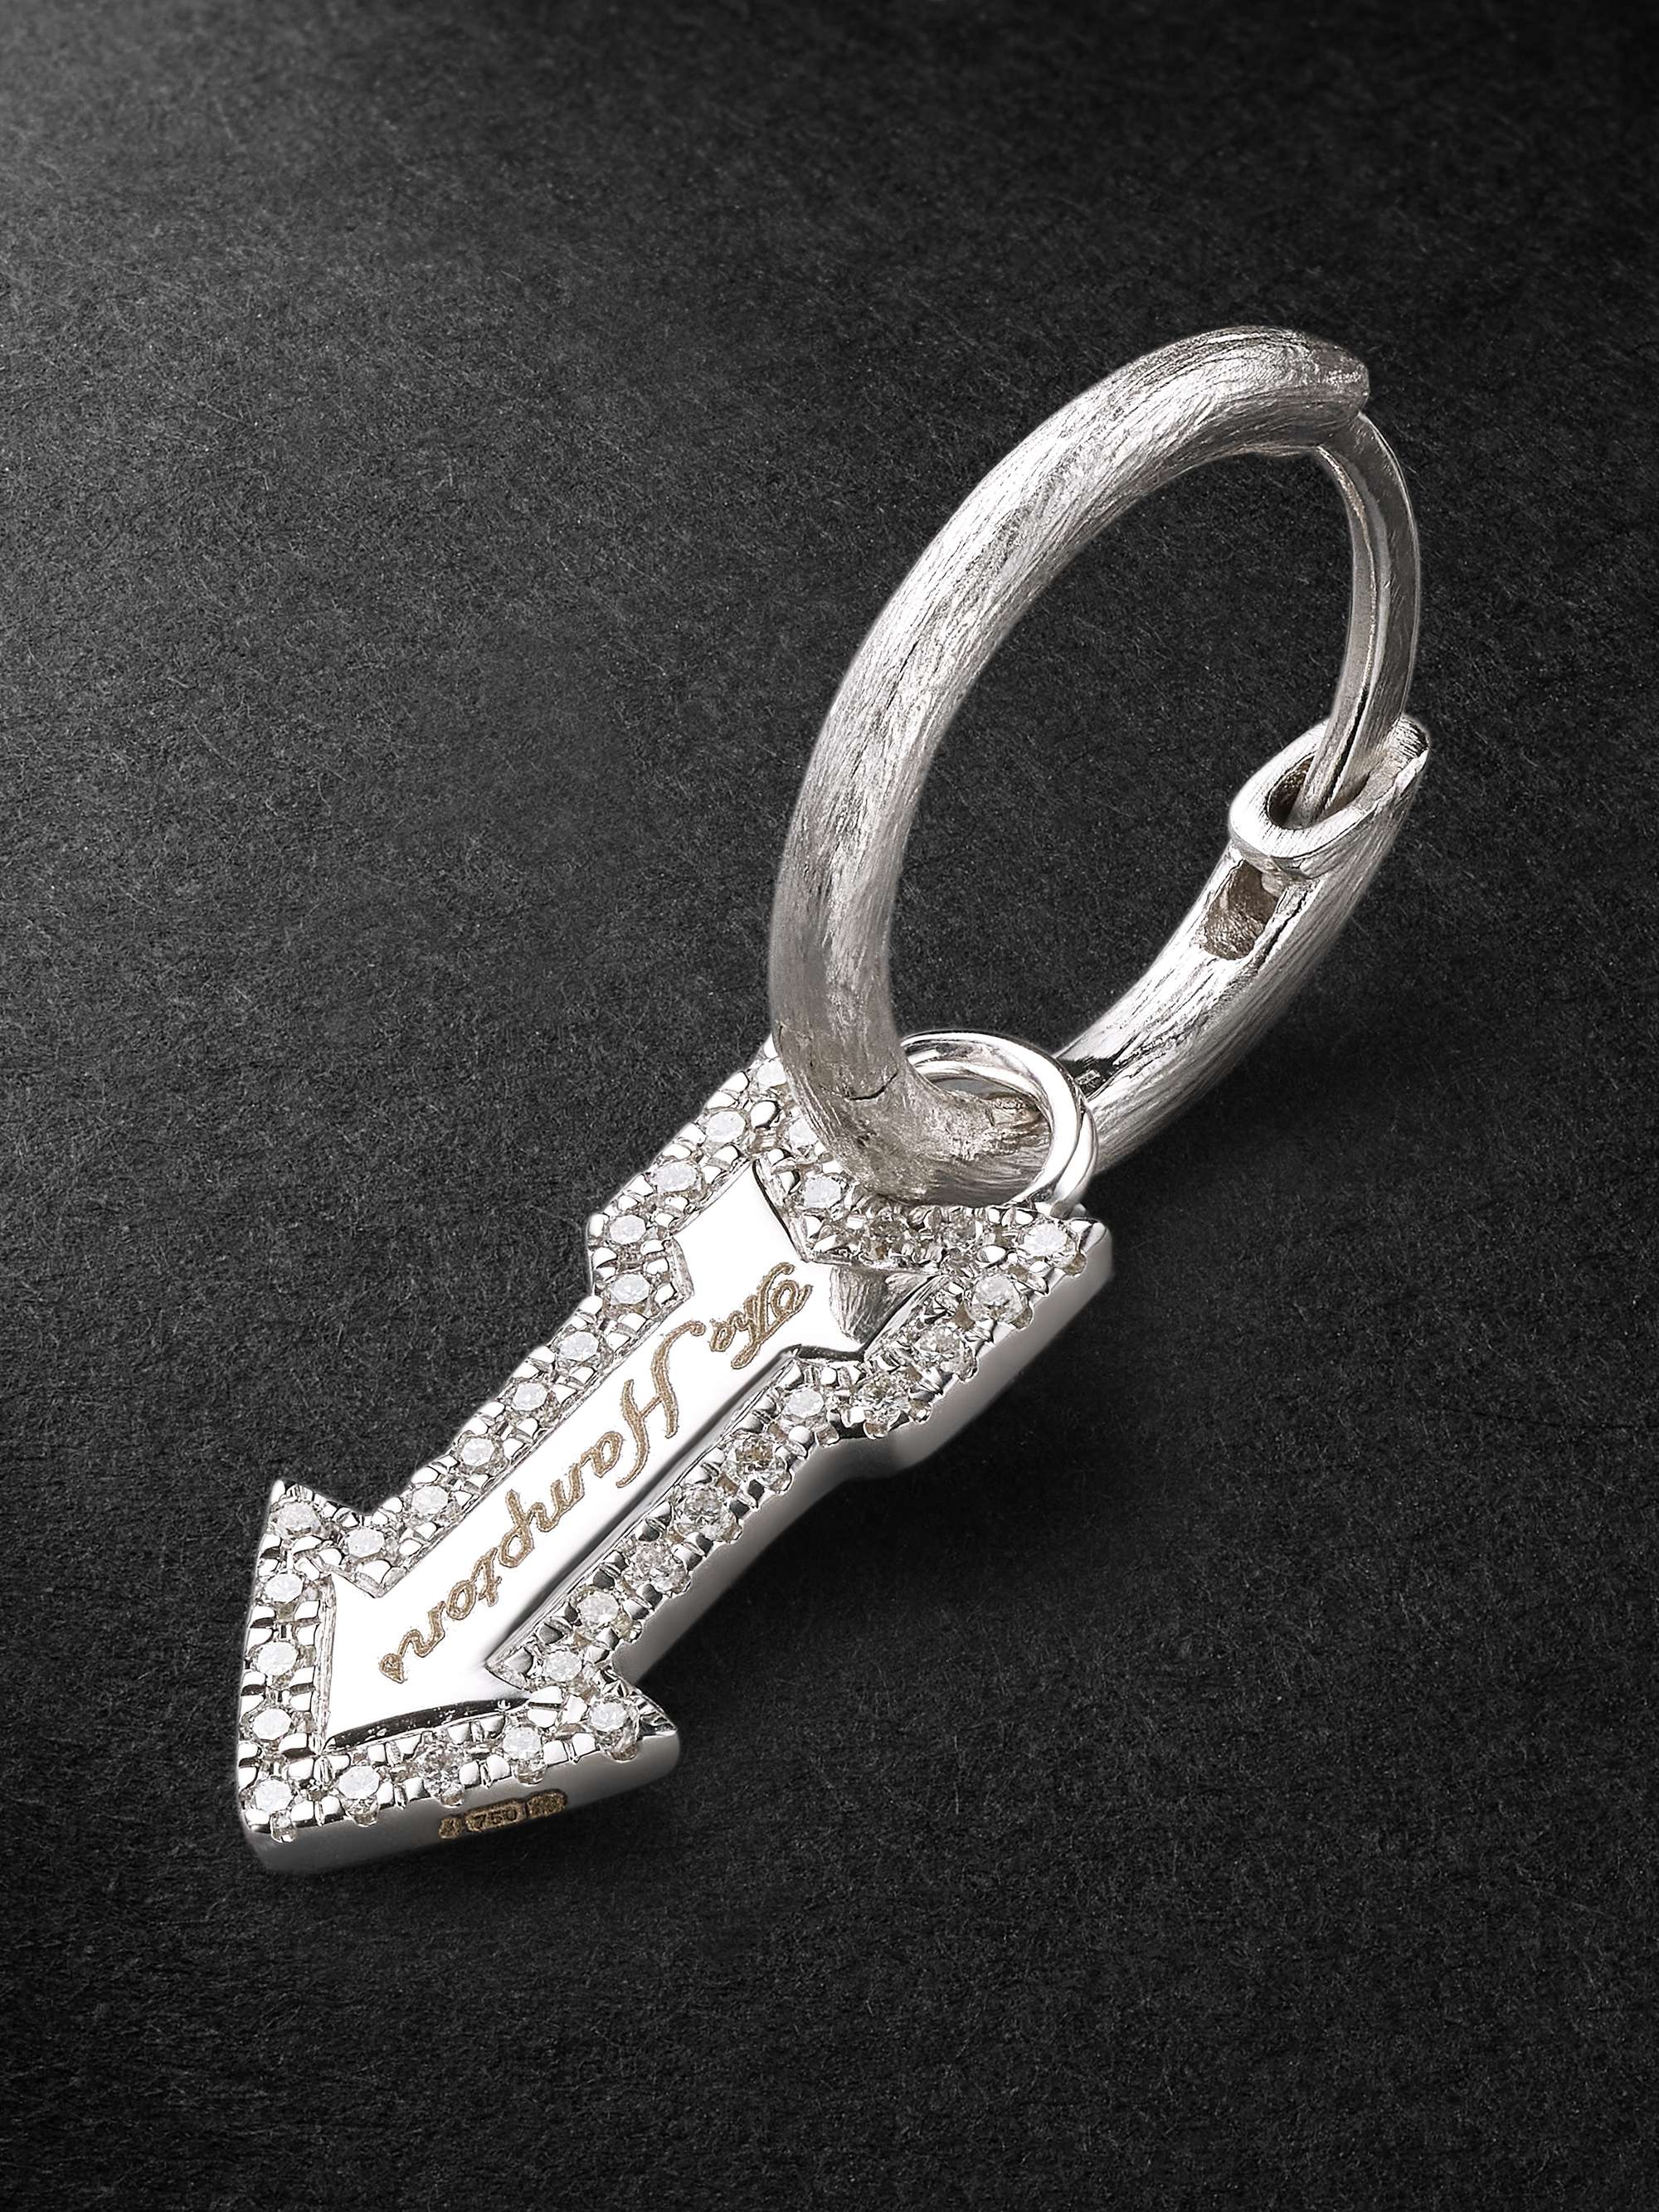 ANNOUSHKA Hamptons 18-Karat White Gold Diamond Earring Pendant